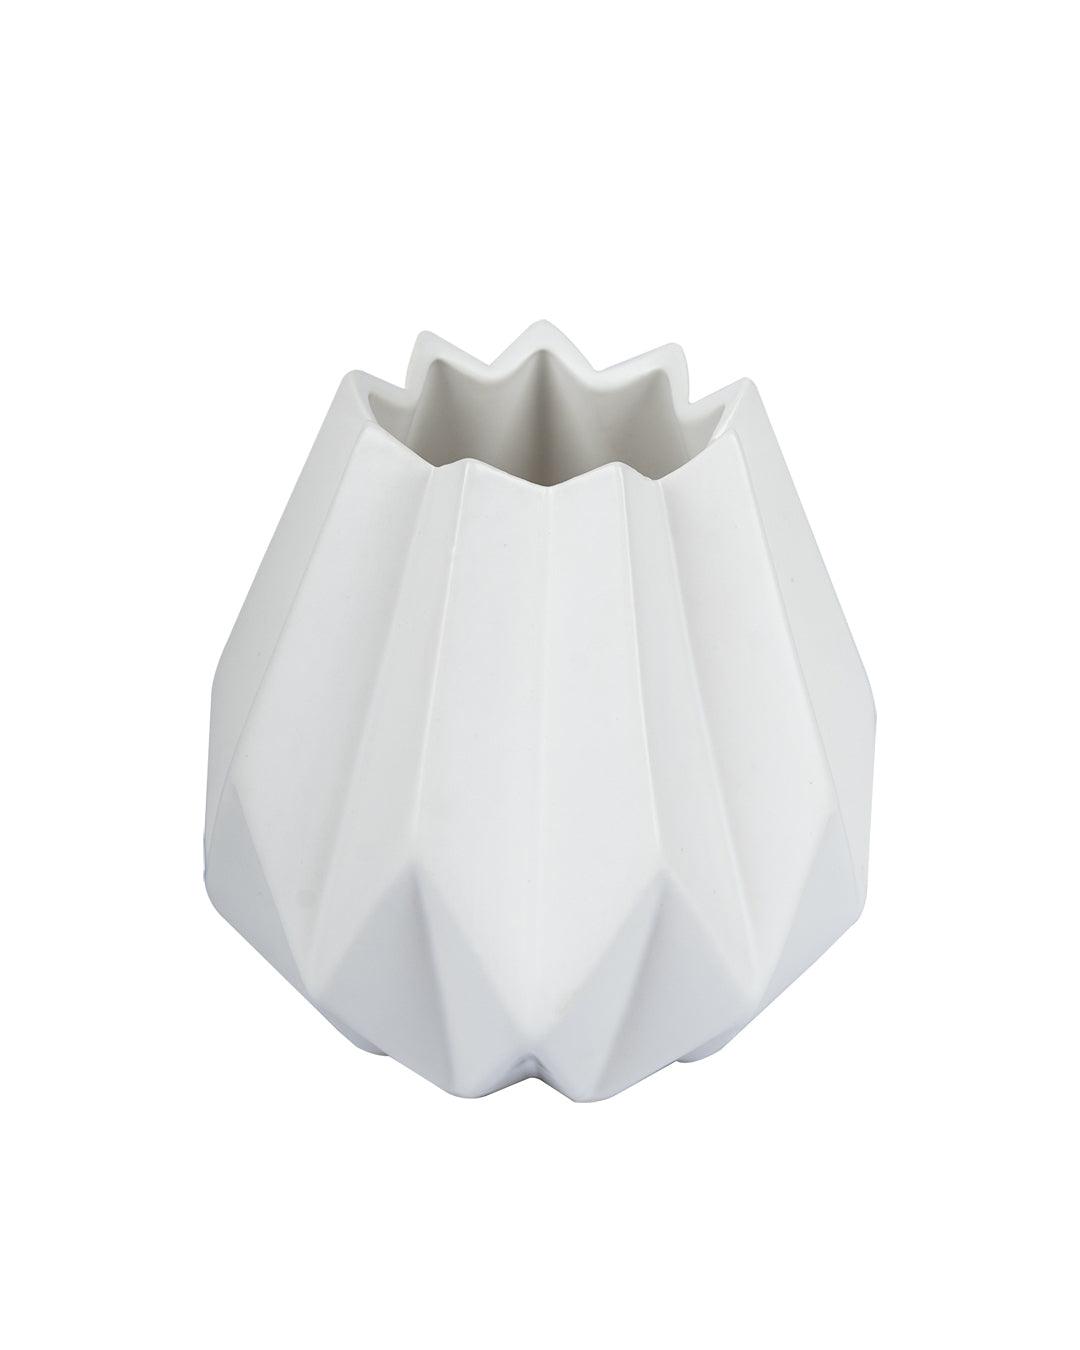 Nordic Flower Vase, White, Ceramic - MARKET 99